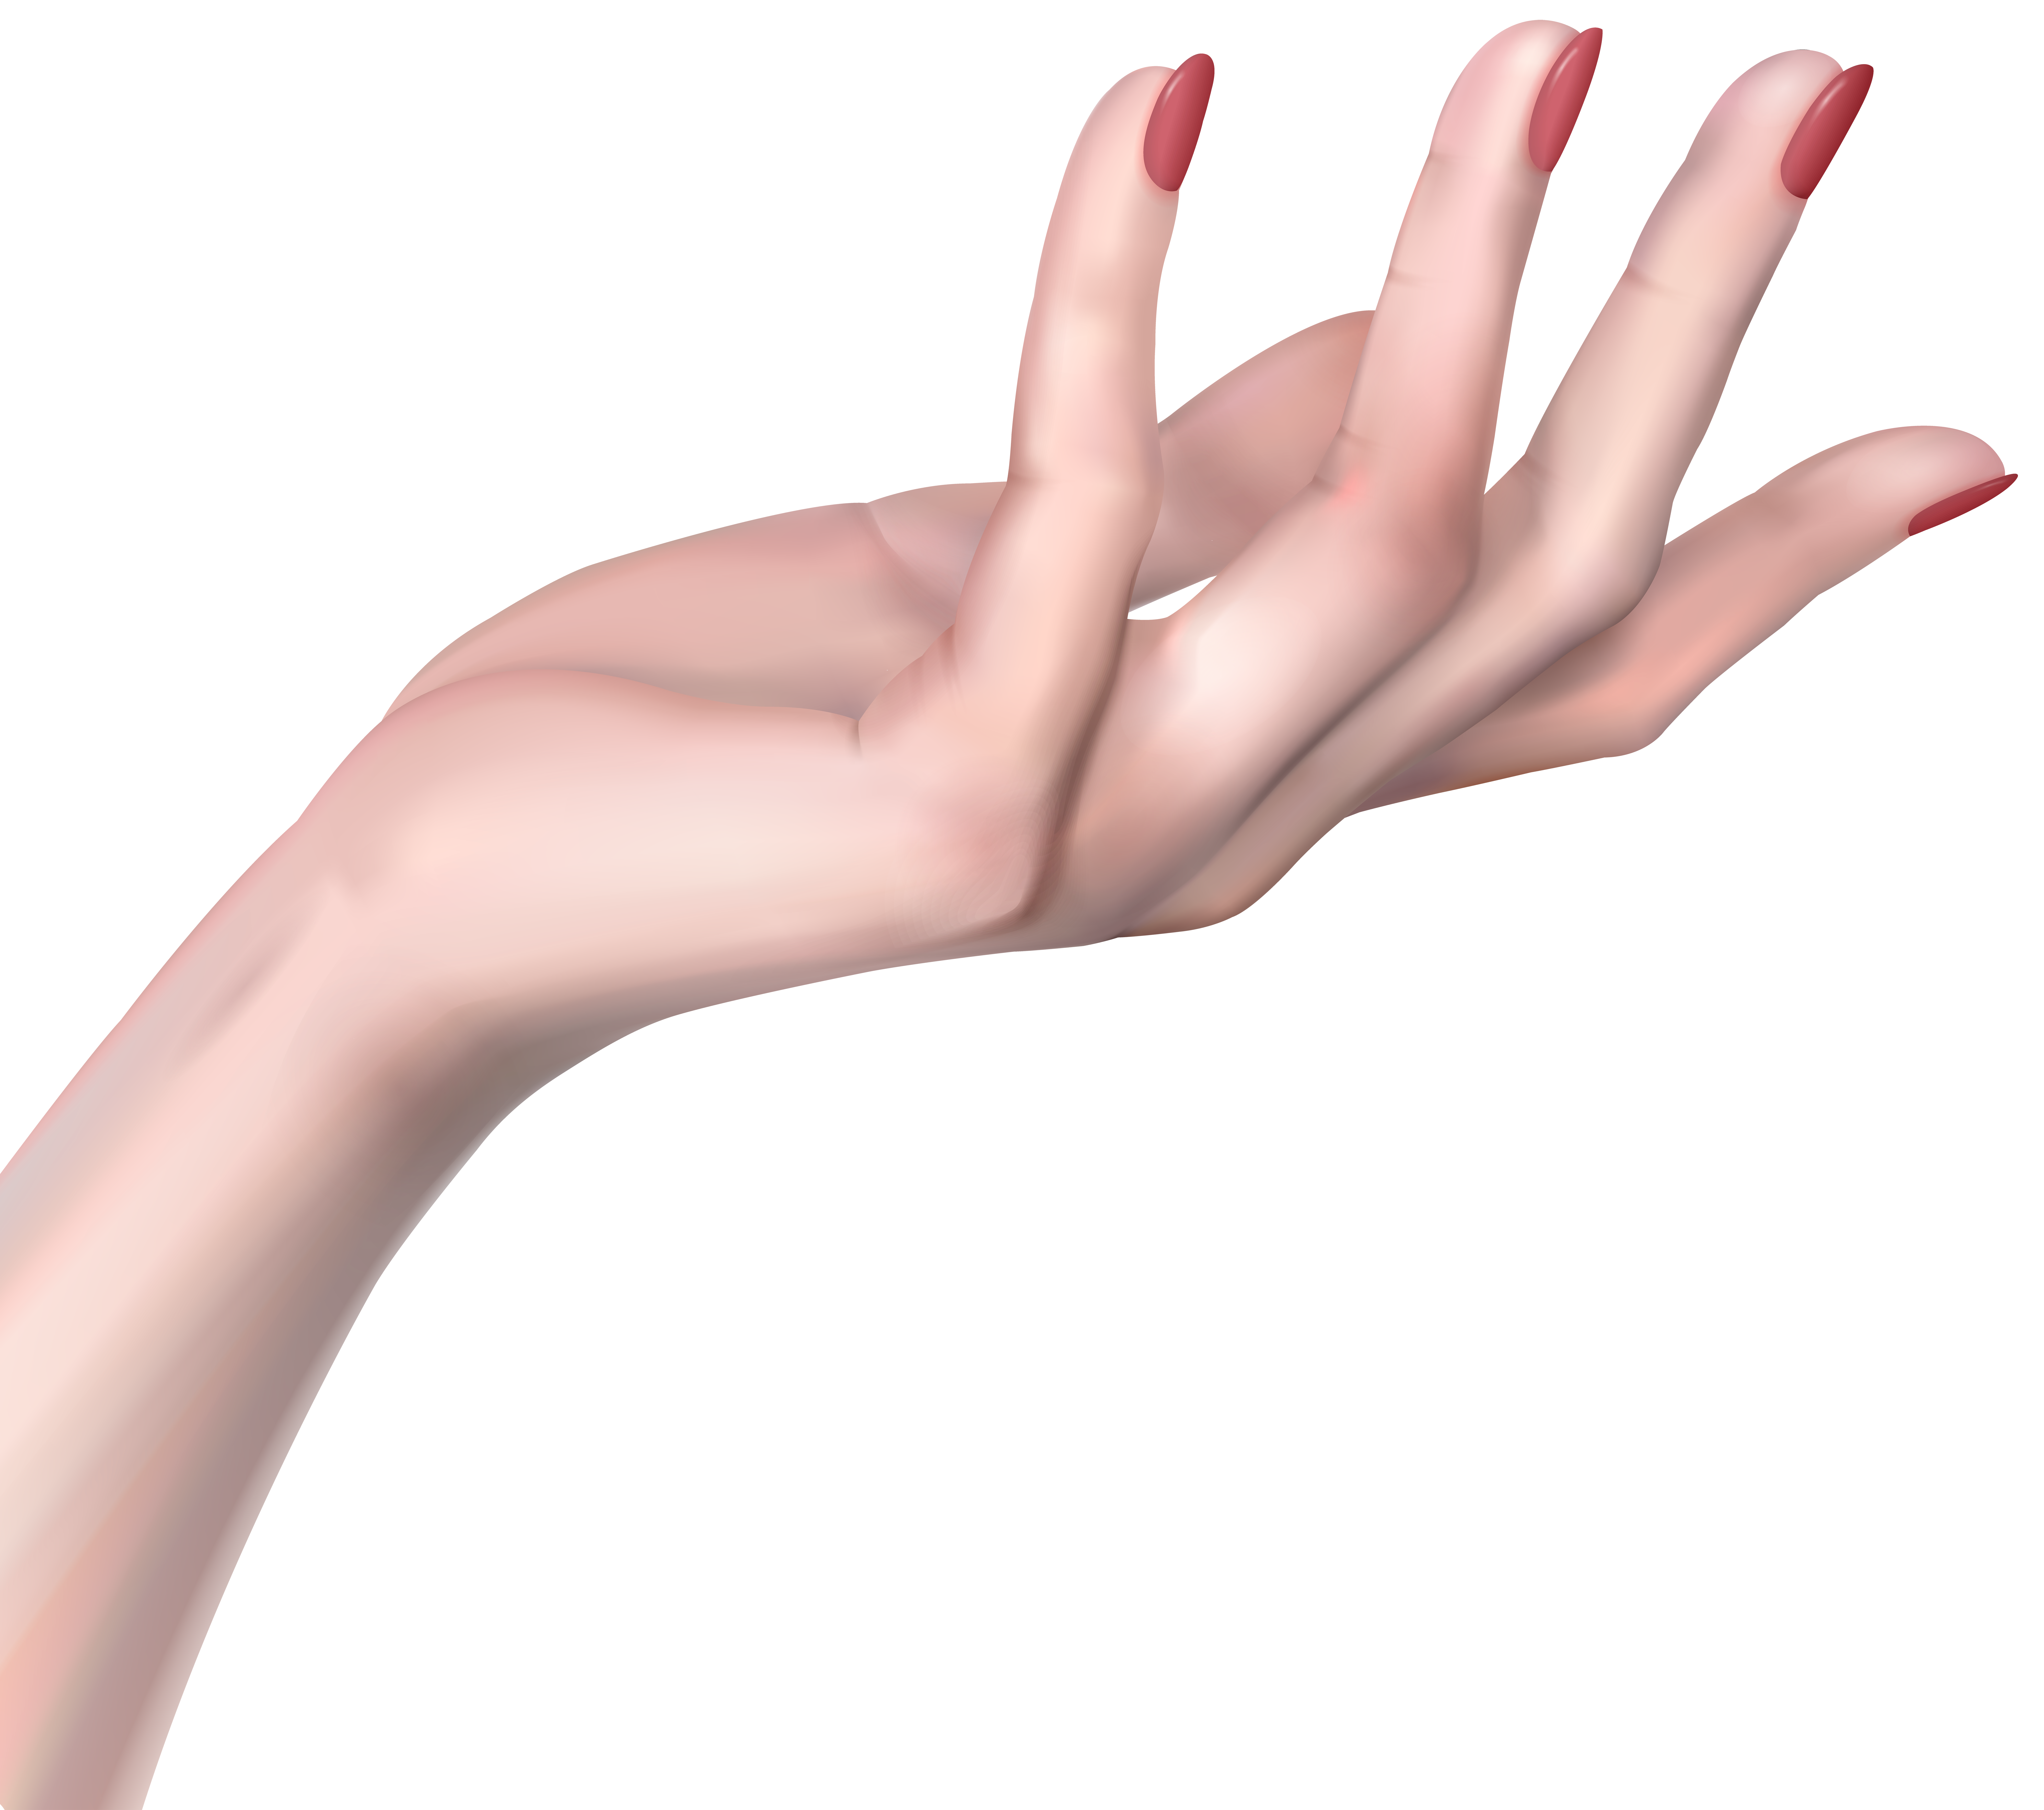 nail clipart female hand